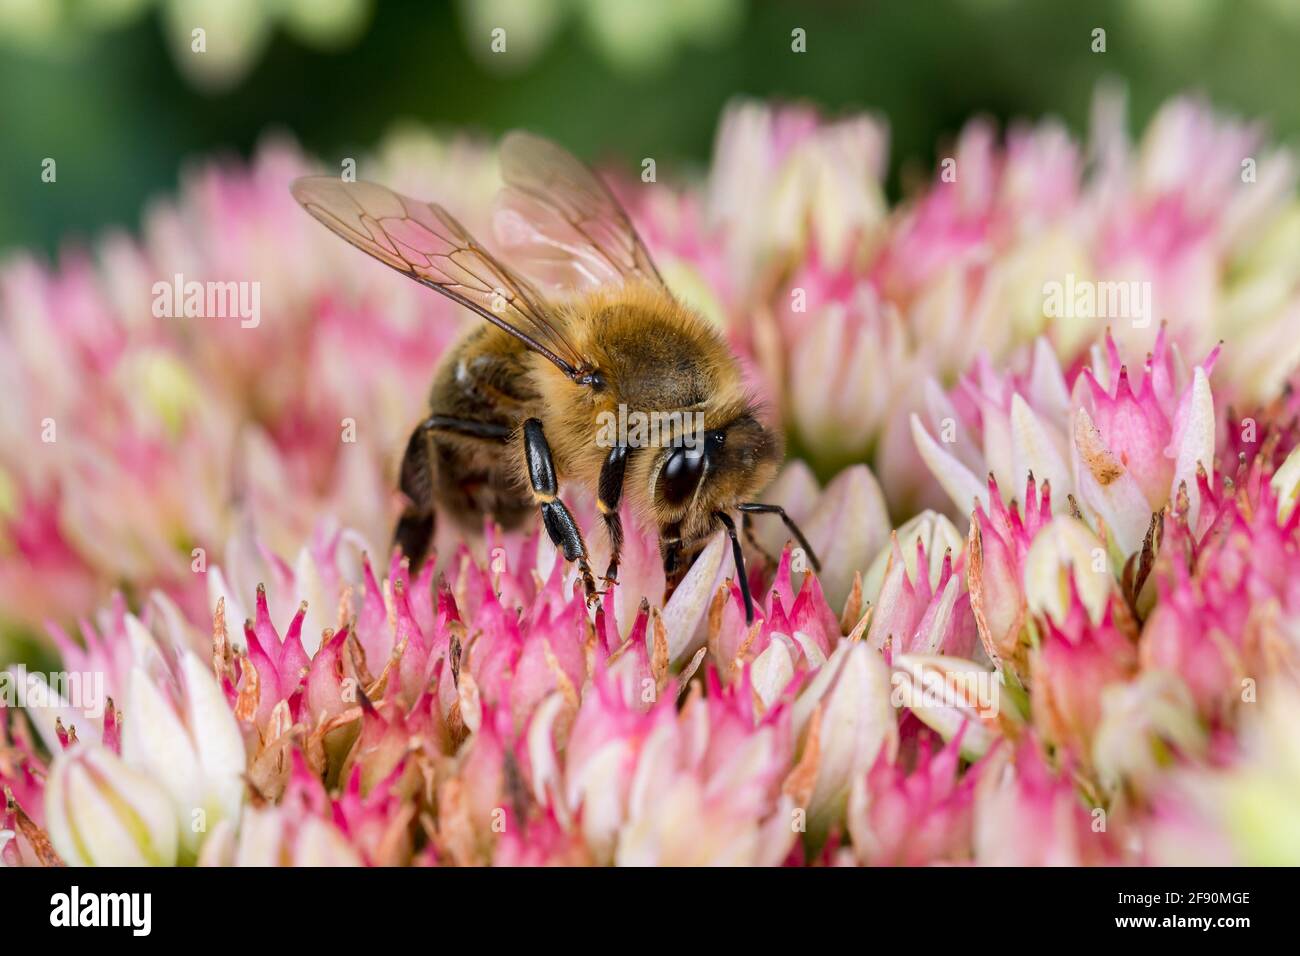 Nahaufnahme von Honigbiene auf Sedum Blume. Konzept des Insekten- und Wildtierschutzes, der Erhaltung von Lebensräumen und des Gartenblumengartens Stockfoto